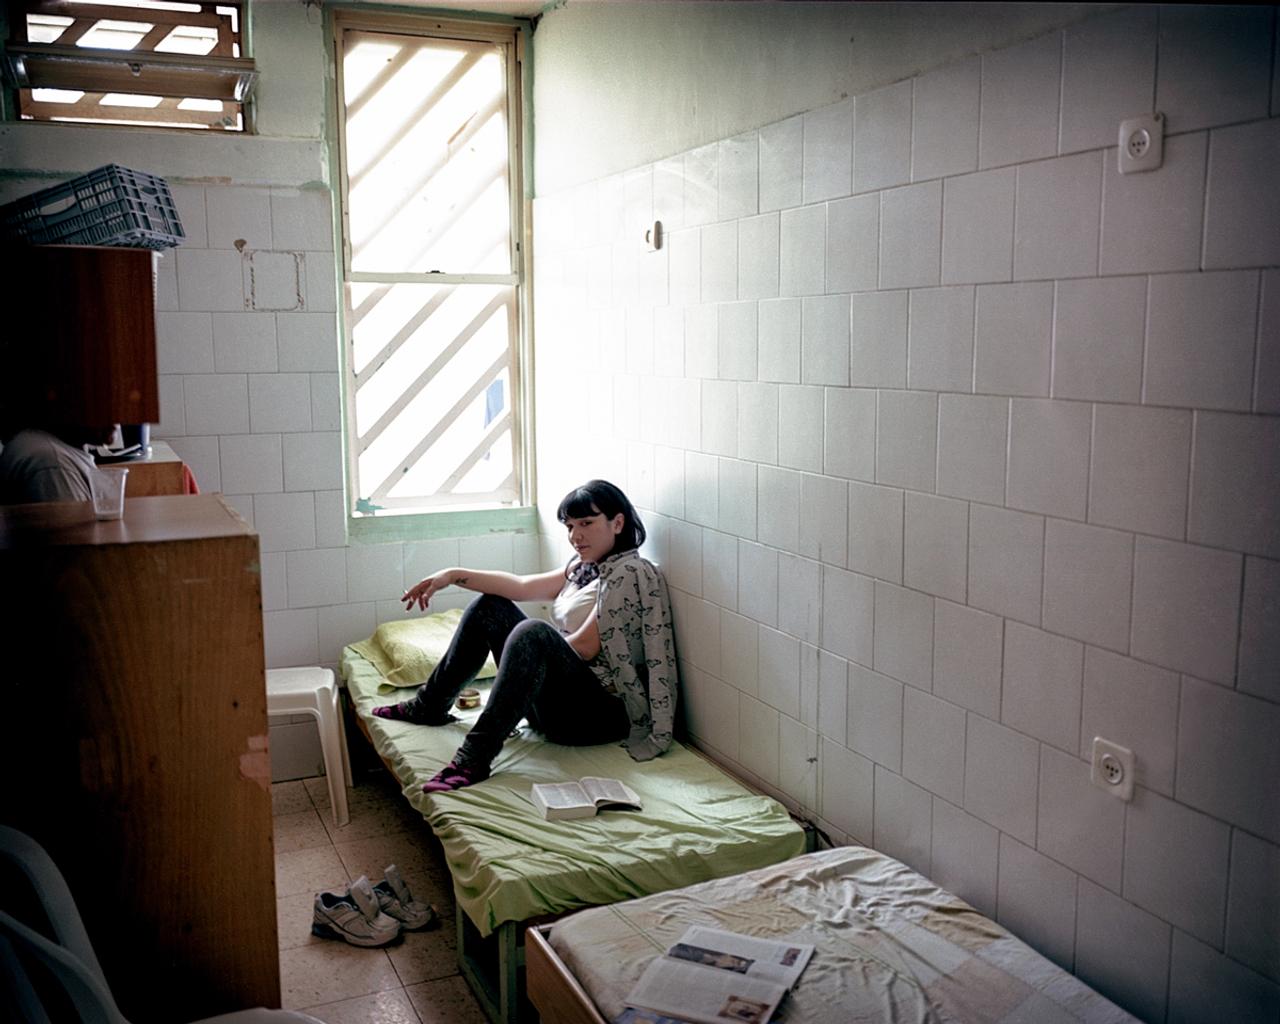 ネベ・ティルザ刑務所は、イスラエル唯一の女性刑務所。